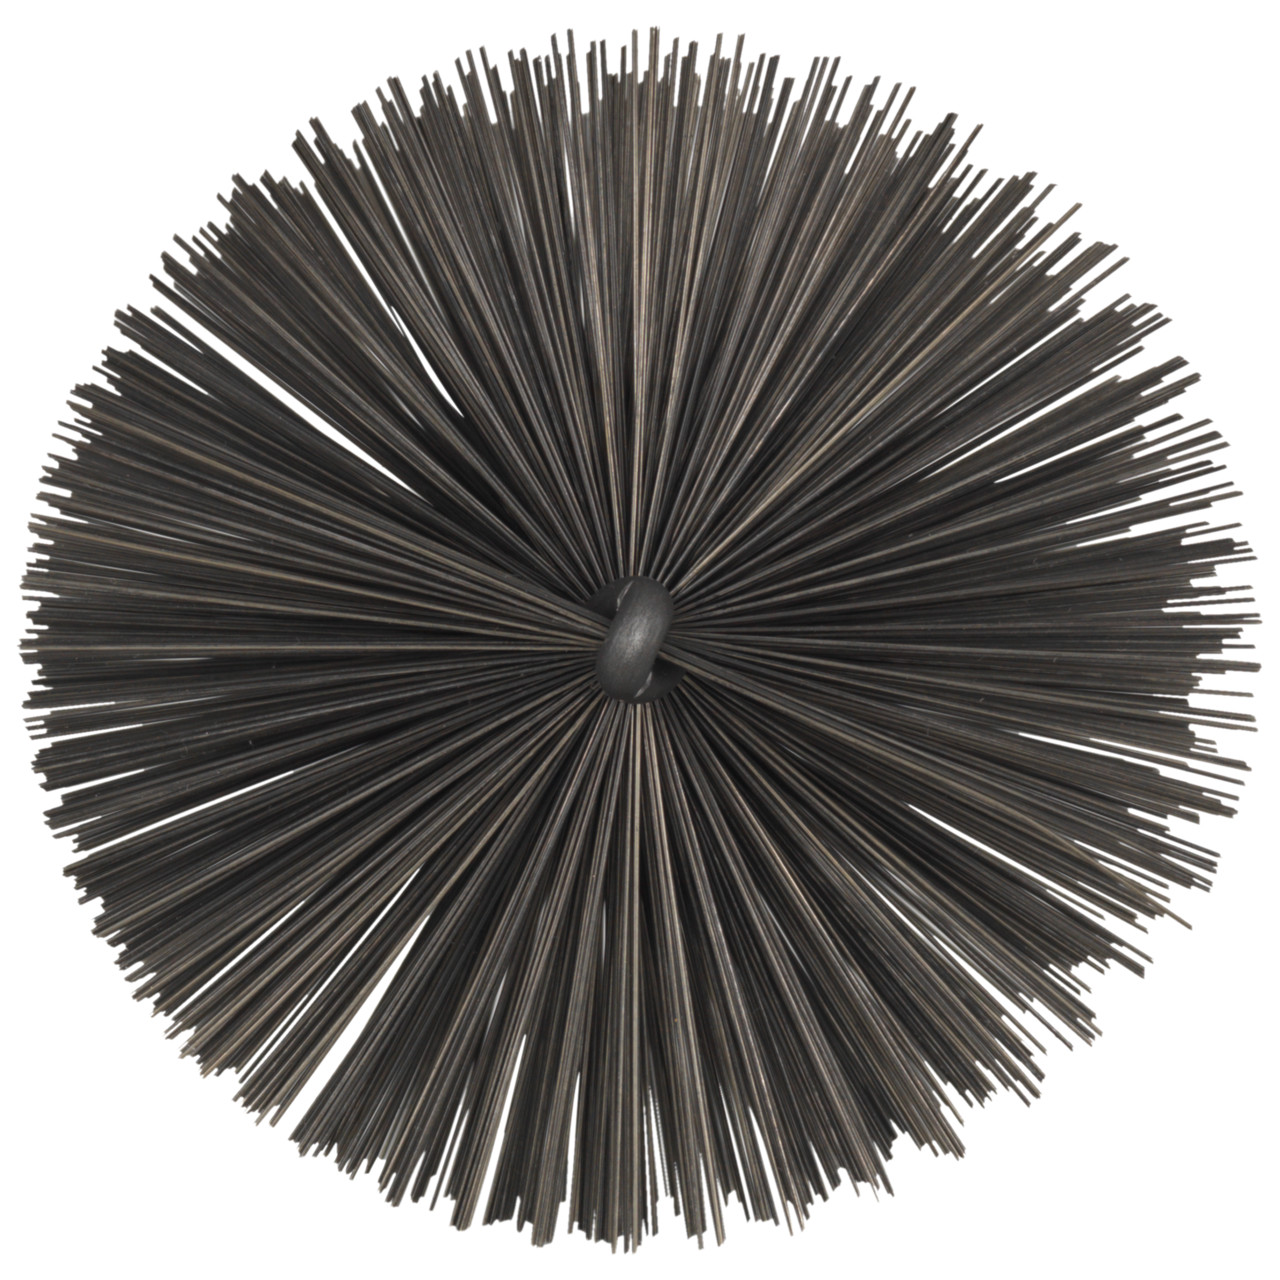 Tyrolit Buisborstel met buitendraad DxGE-I 20xW1/2-150 Voor staal, vorm: 18ROGDG - (buisborstel), Art. 34203600